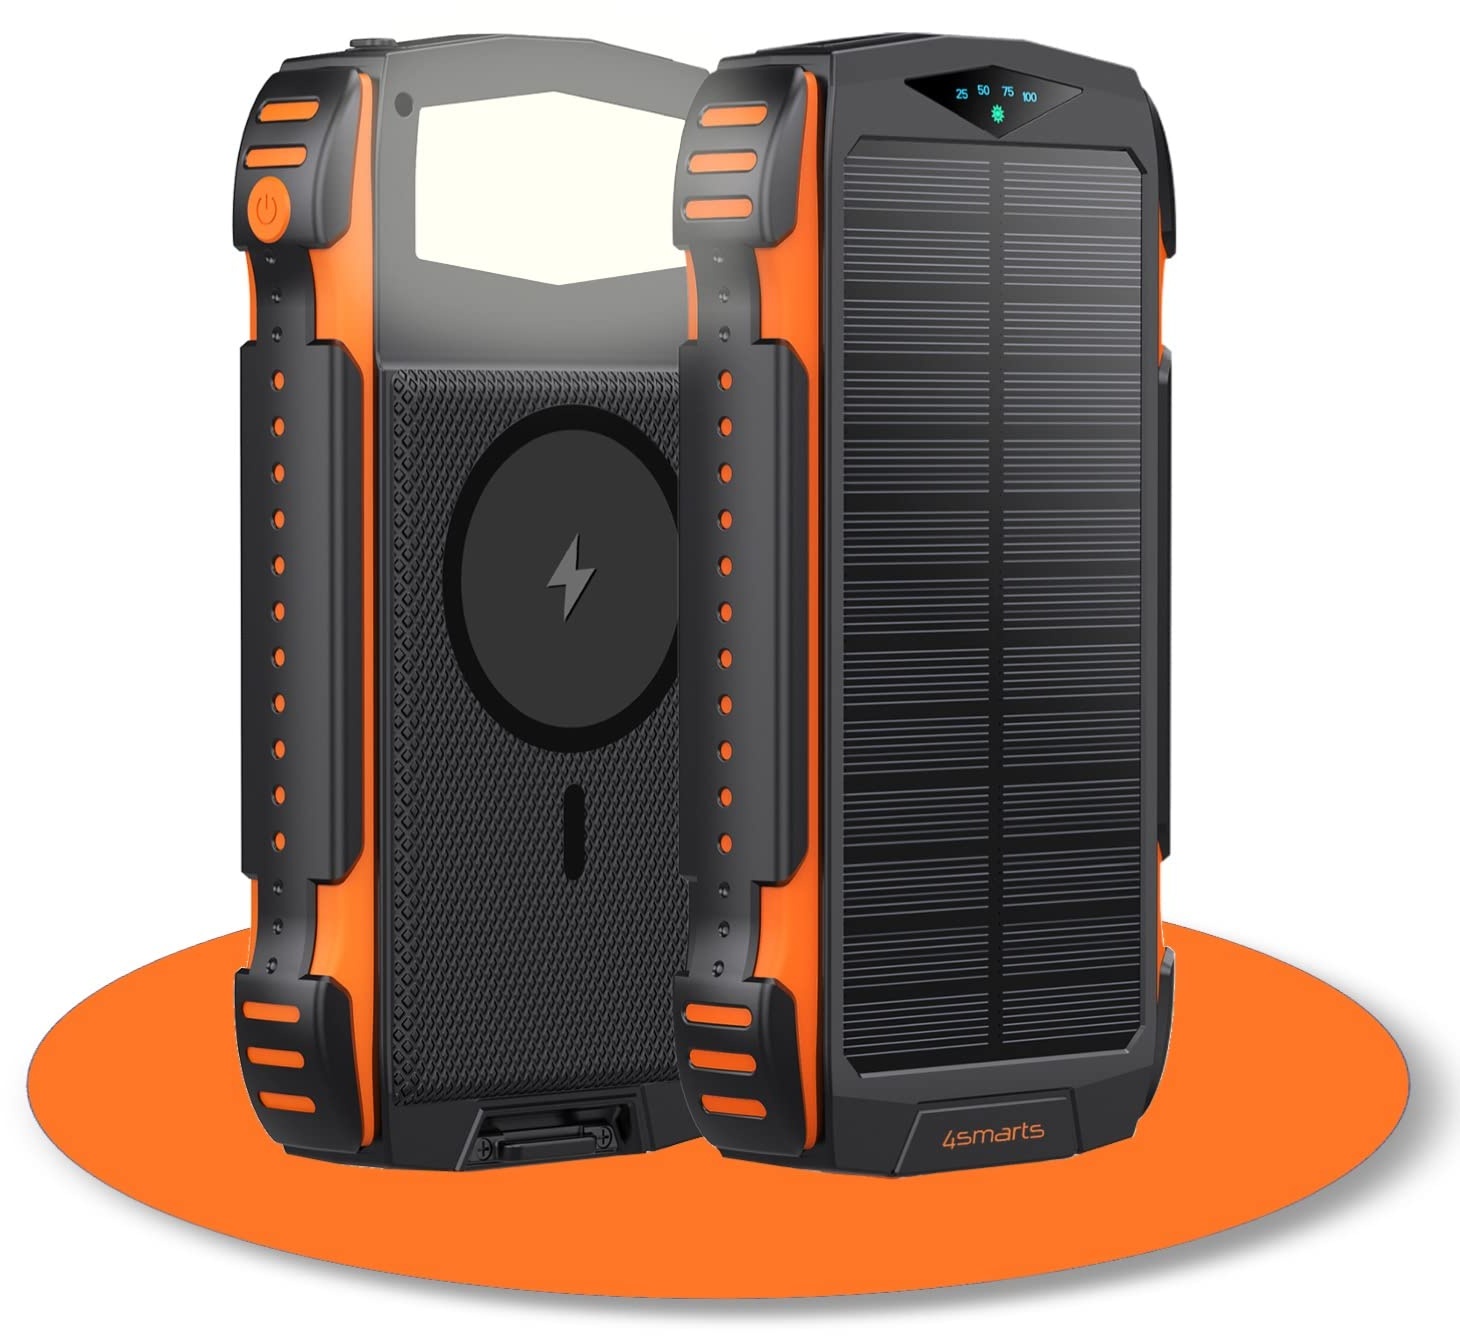 4smarts Powerbank 20000mah [Schwarz Orange] - Solar Powerbank mit Schnellladefunktion für mehrere Geräte gleichzeitig - Wireless Powerbank mit MagSafe & LED Lampe als Travel Essentials - Power Bank